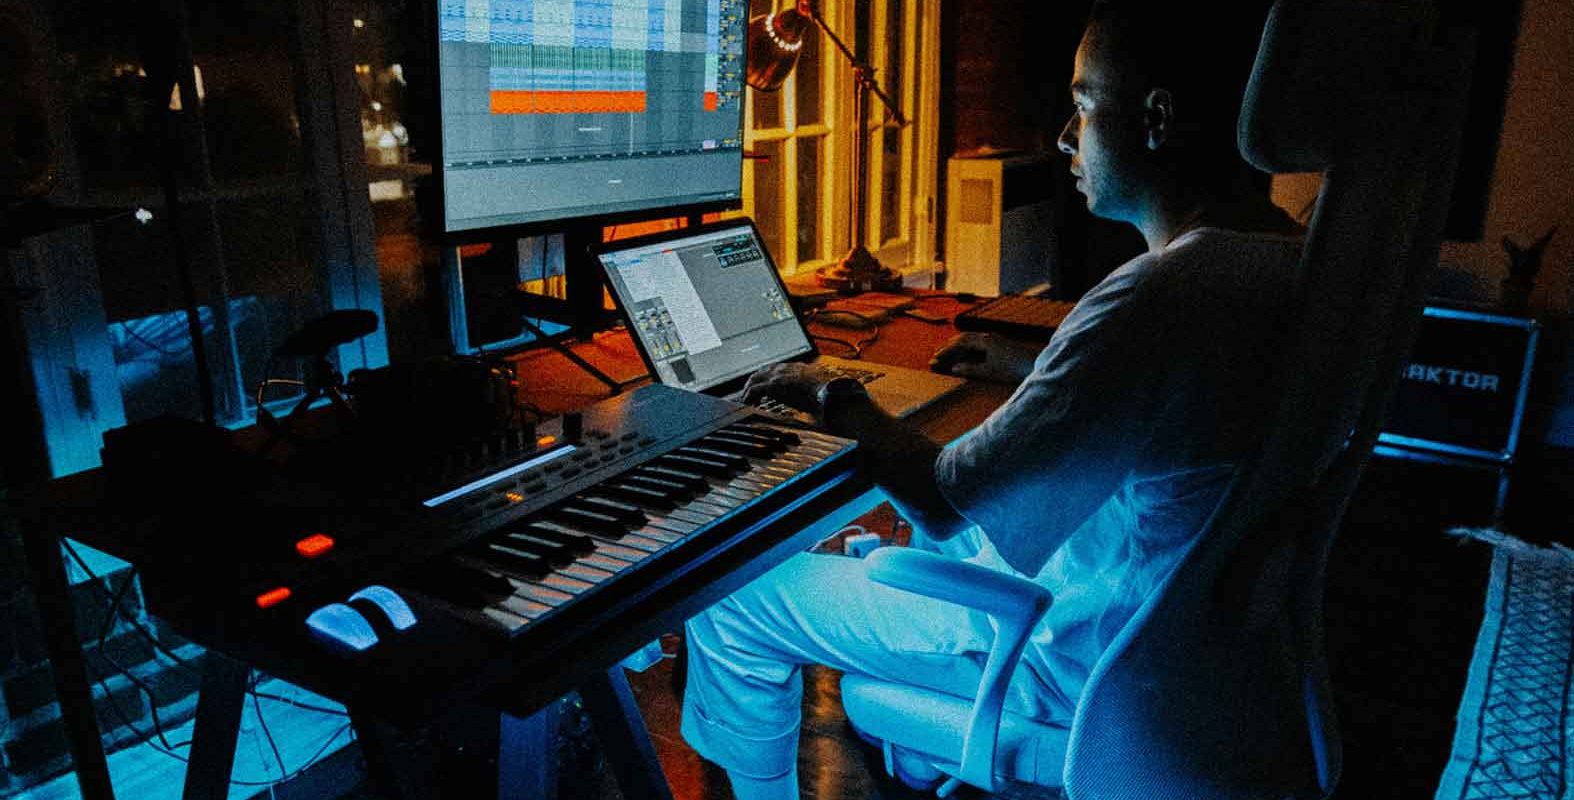 Aeli in his LA studio at night